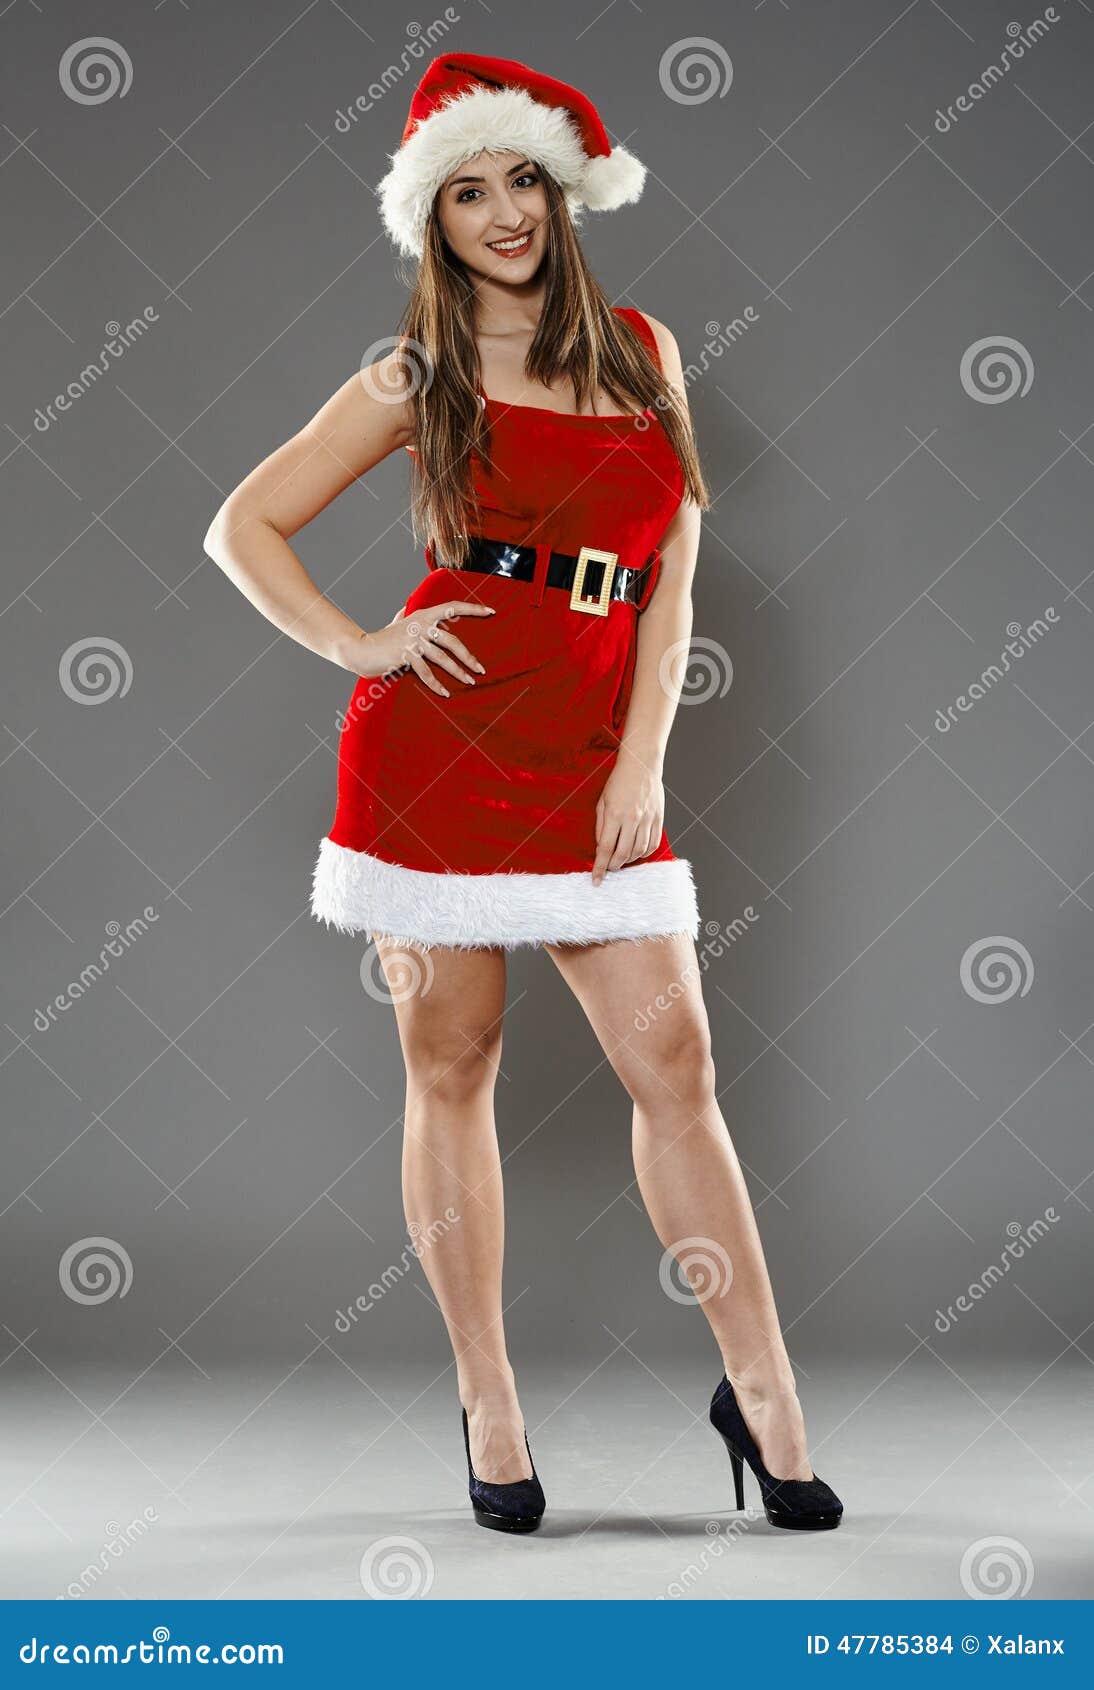 Santa helper. Full length of Santa girl on gray background